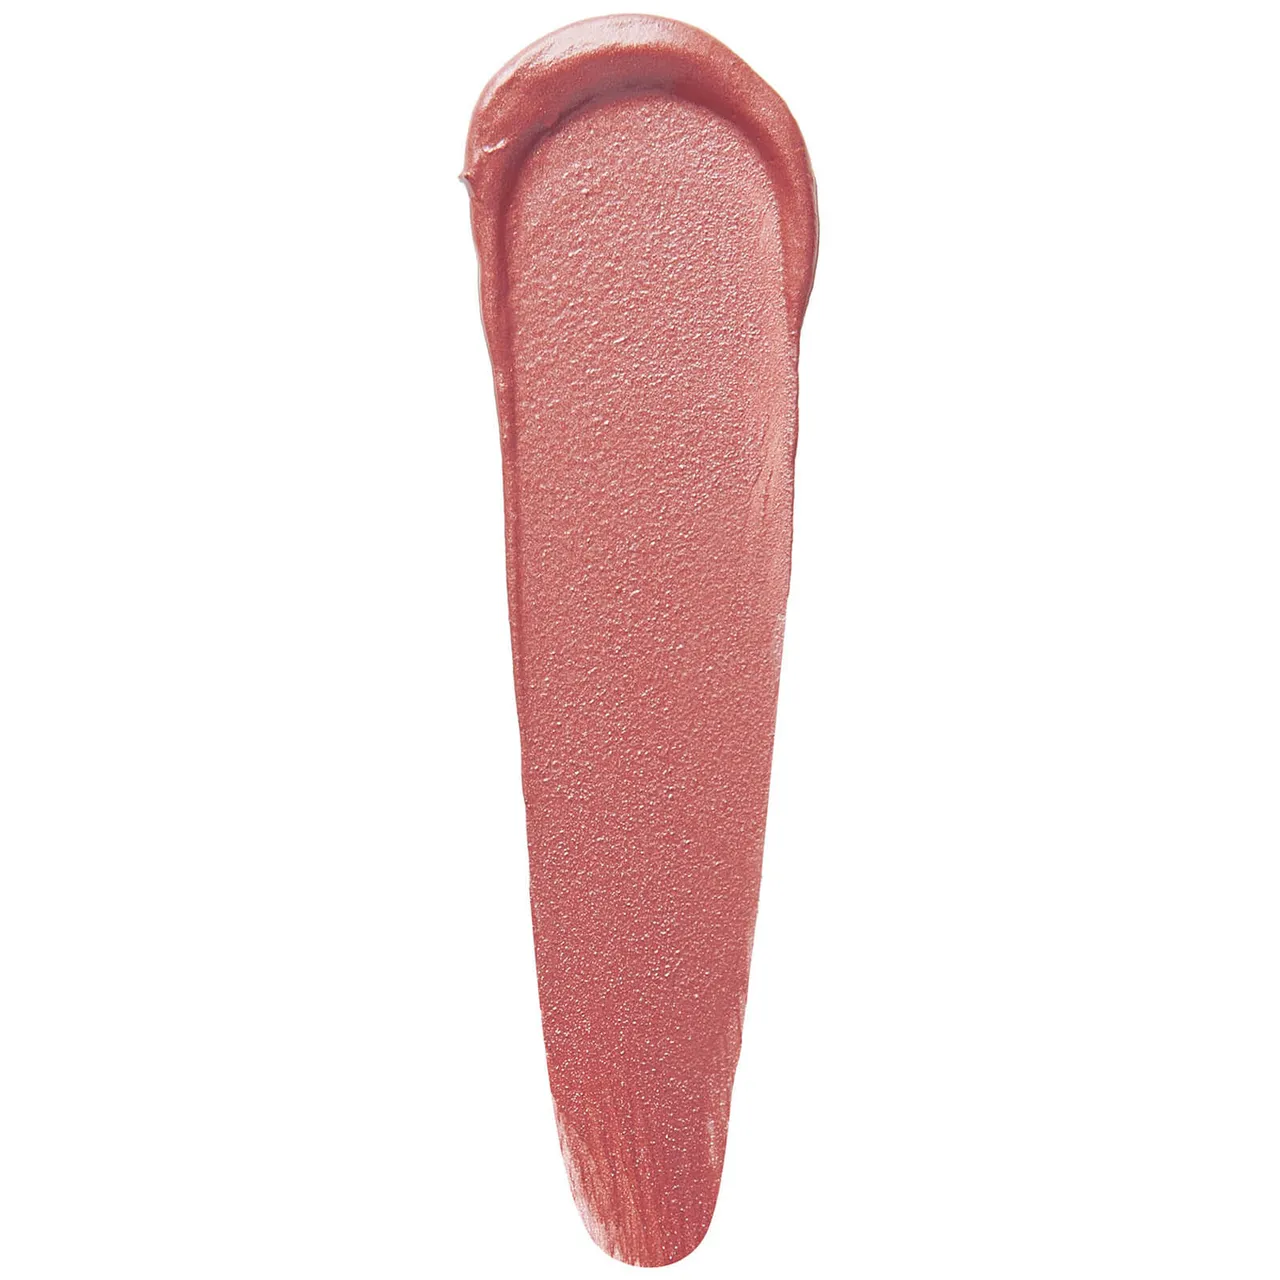 Stila Stay All Day Shimmer Liquid Lipstick 3ml (Various Shades) - Carina Shimmer